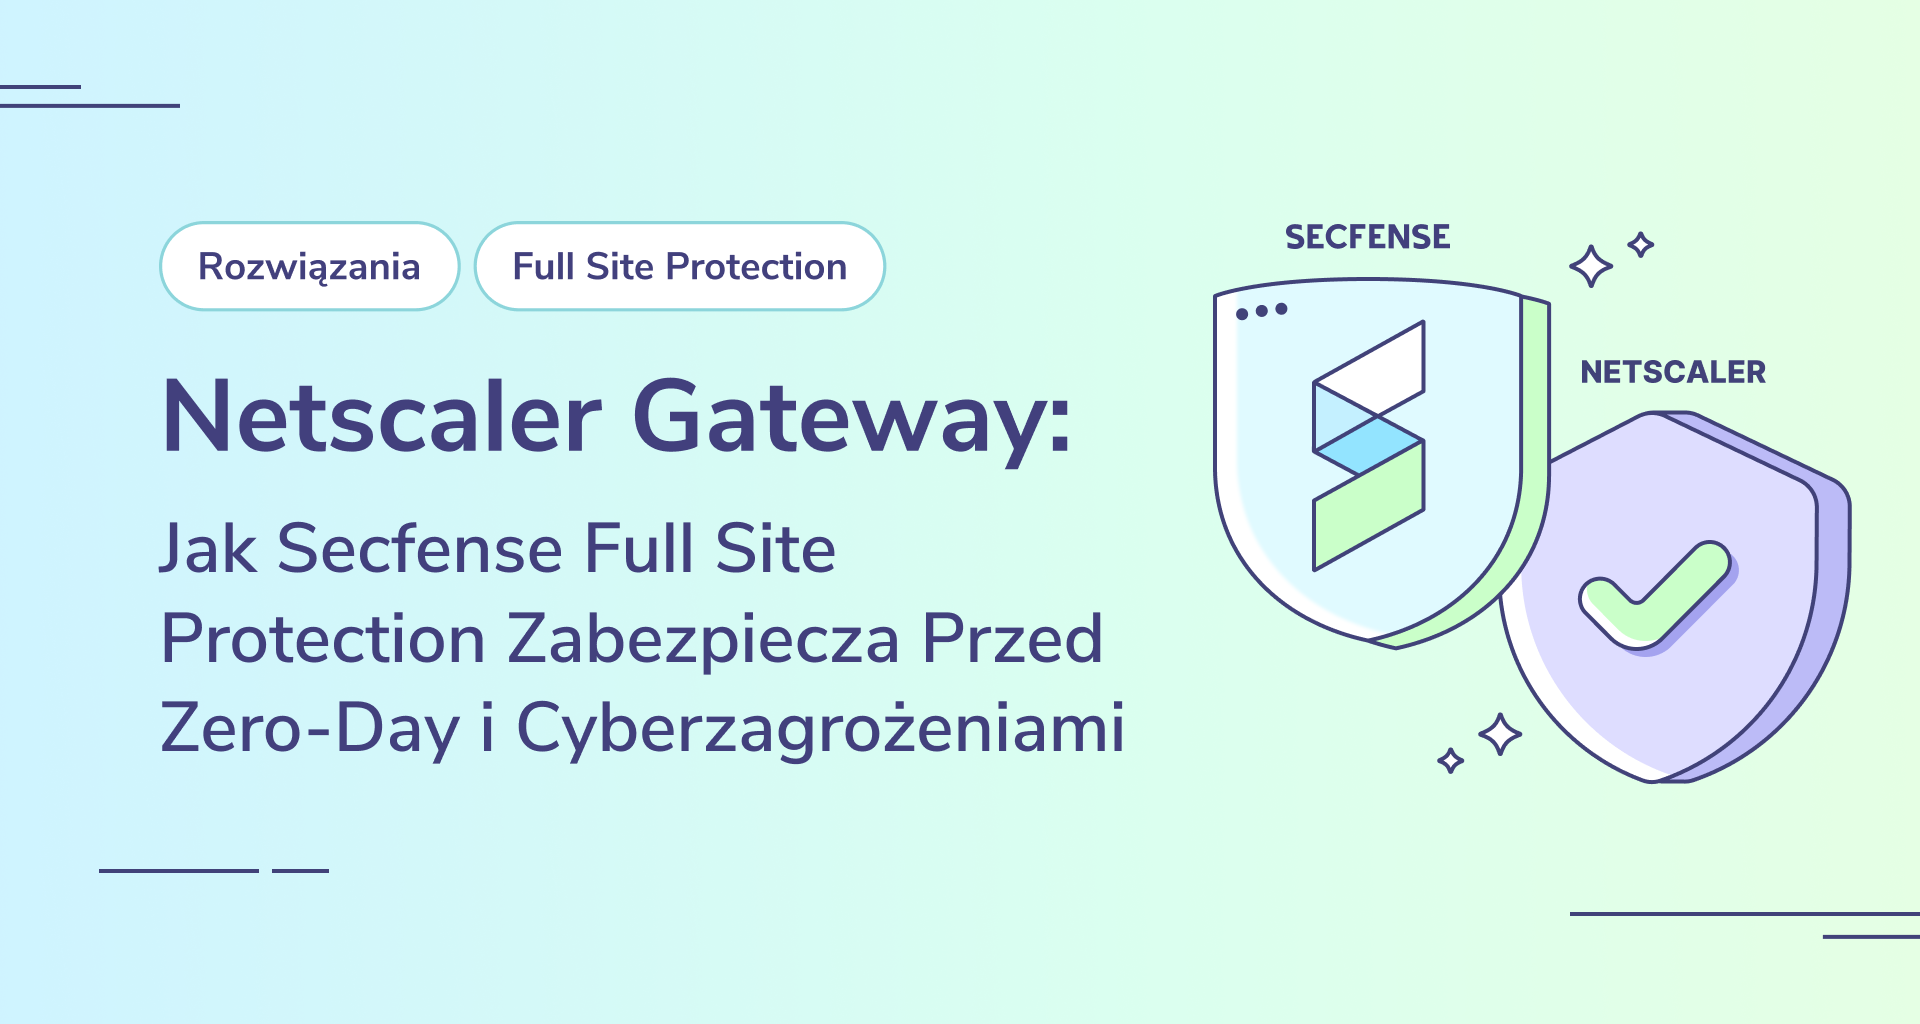 Netscaler Gateway: Jak Secfense Full Site Protection Zabezpiecza Przed Zero-Day i Cyberzagrożeniami